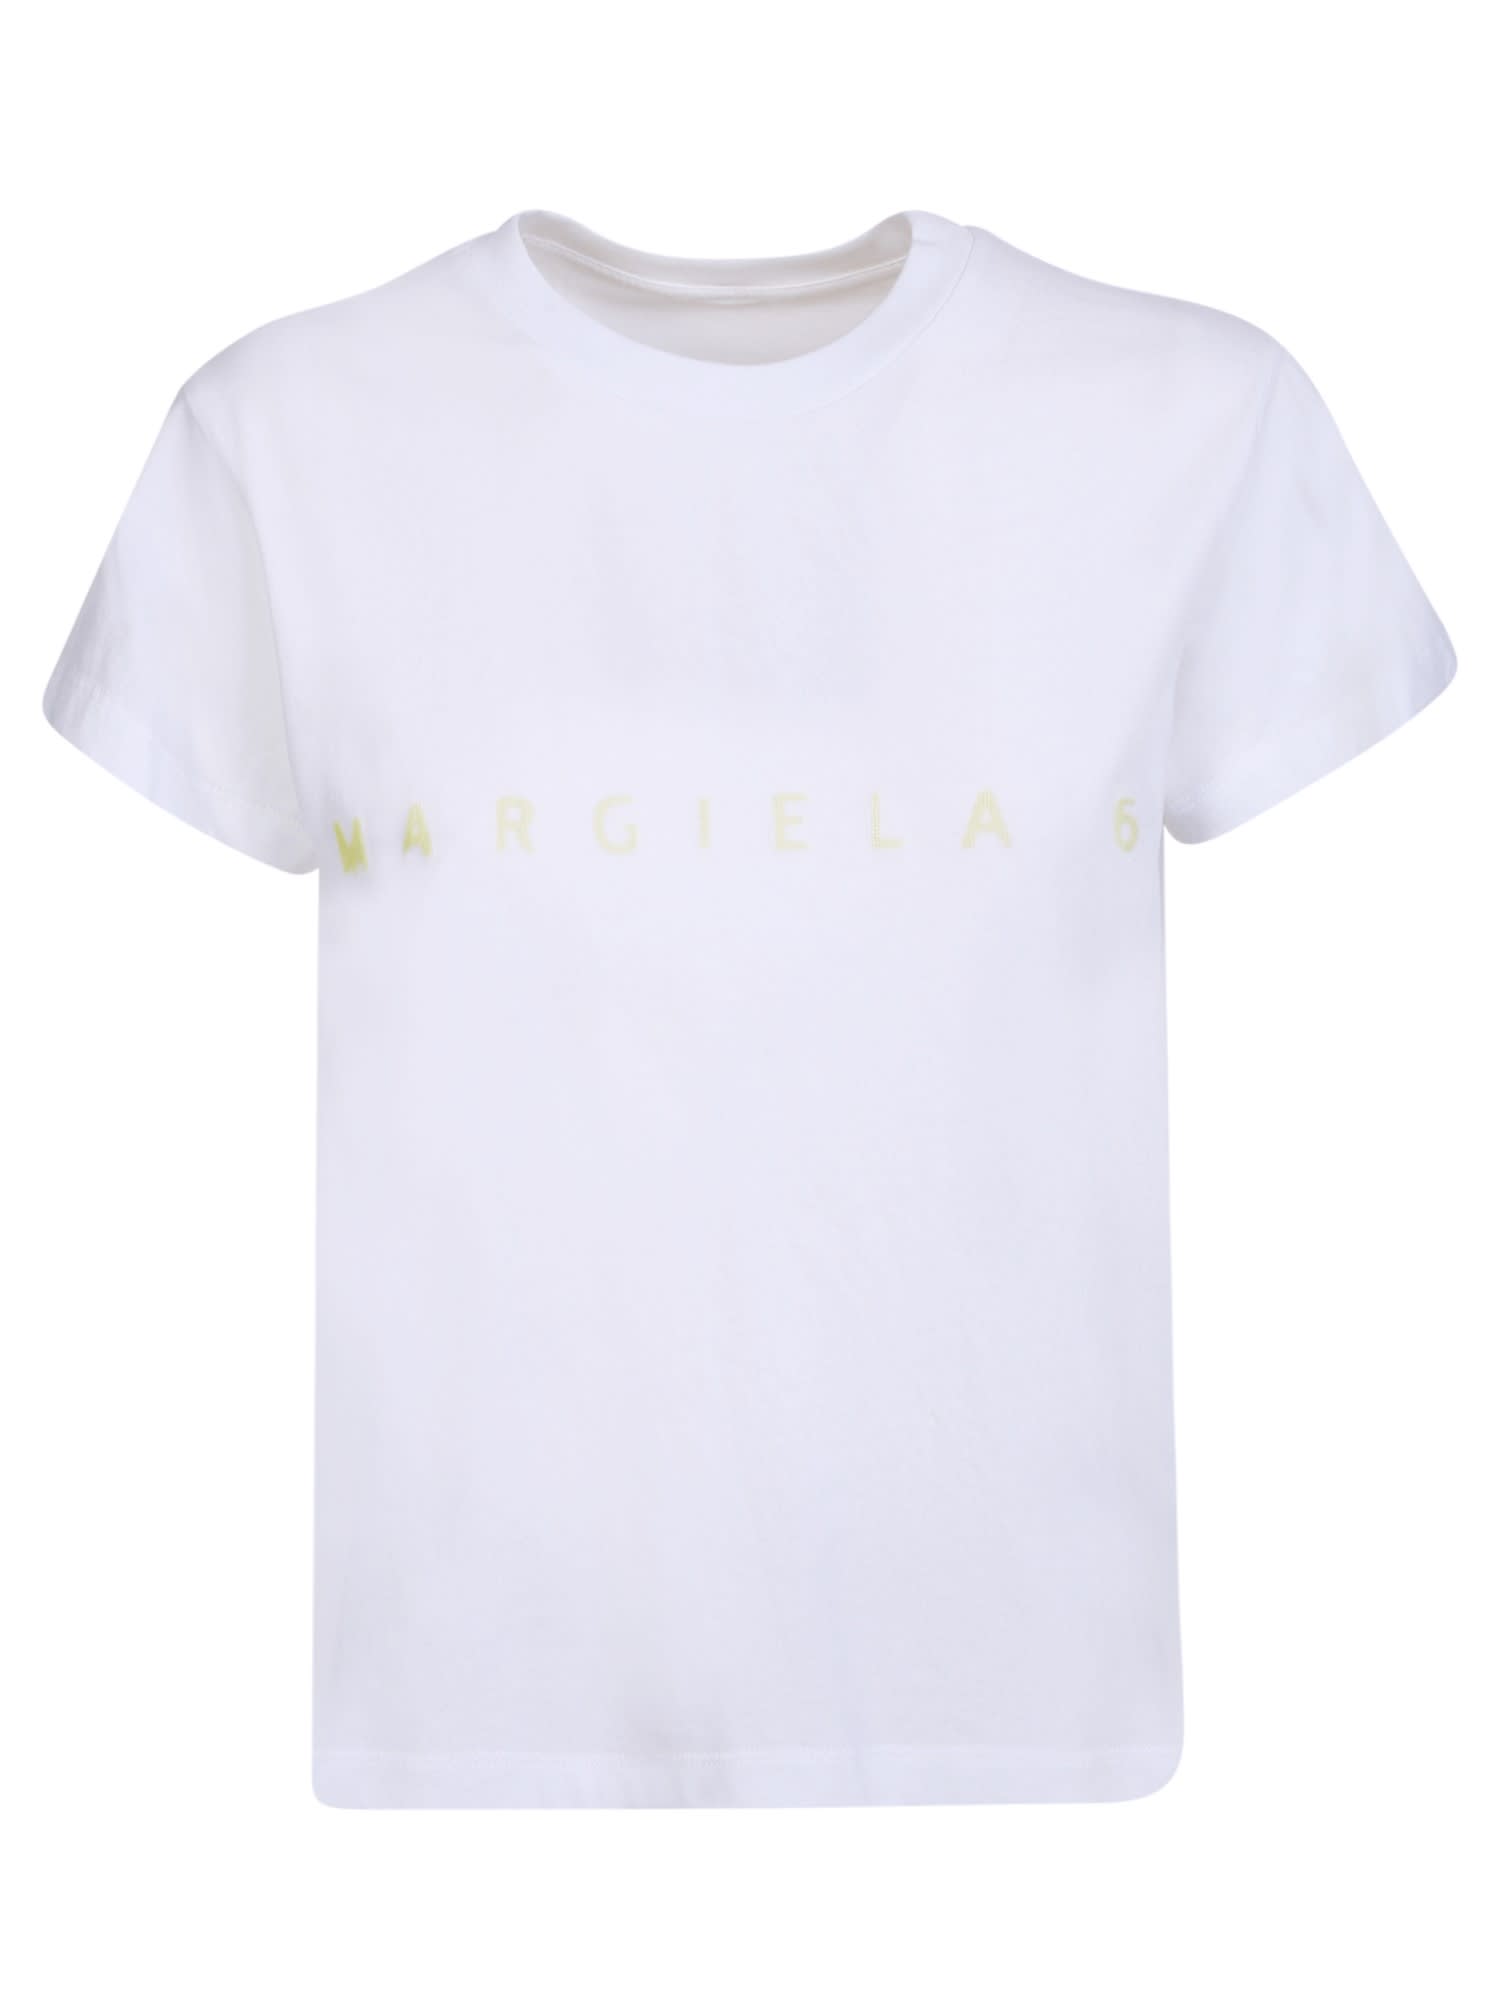 MM6 Maison Margiela White T-shirt